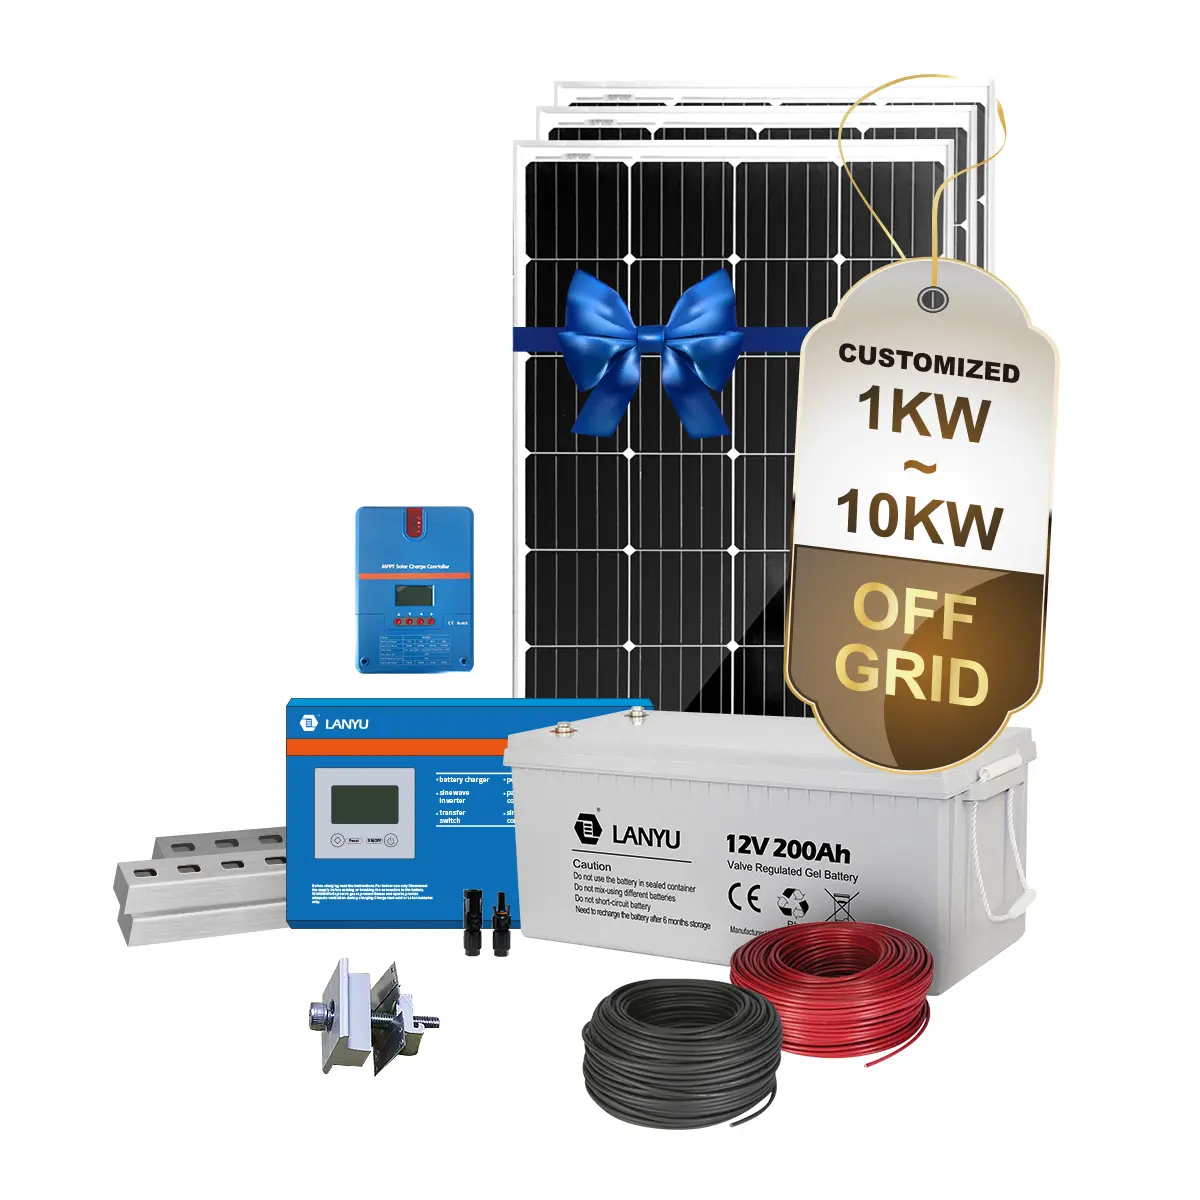 Migliore prezzo 1000w di potenza del pannello solare off grid Sistema di Energia solare 1kw sistema solare a casa